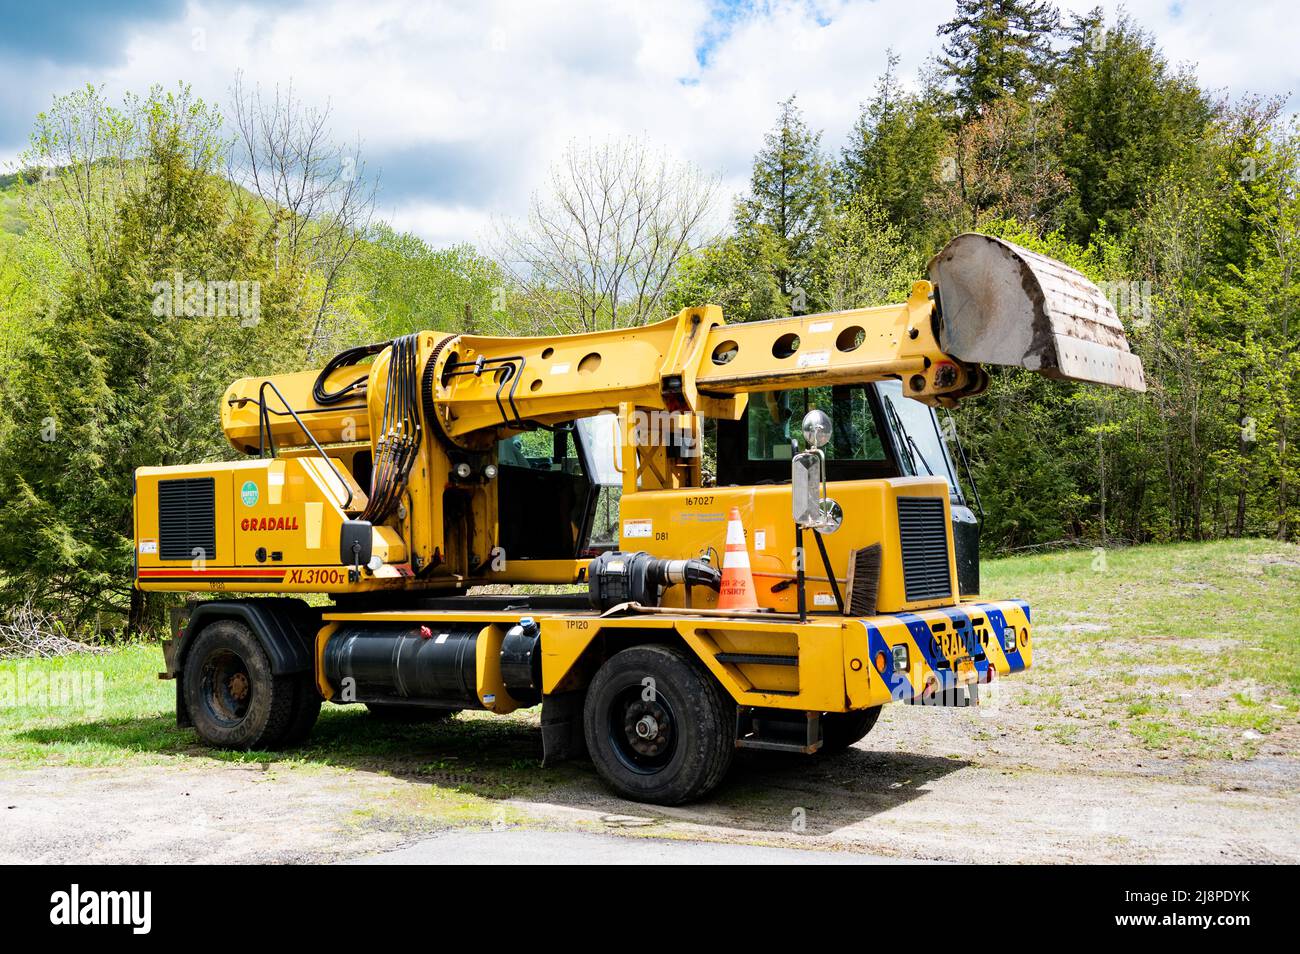 Un escavatore idraulico Gradall da XL3100 V di proprietà del Dipartimento dei Trasporti dello Stato di New York parcheggiato in un sacco nelle Adirondack Mountains Foto Stock